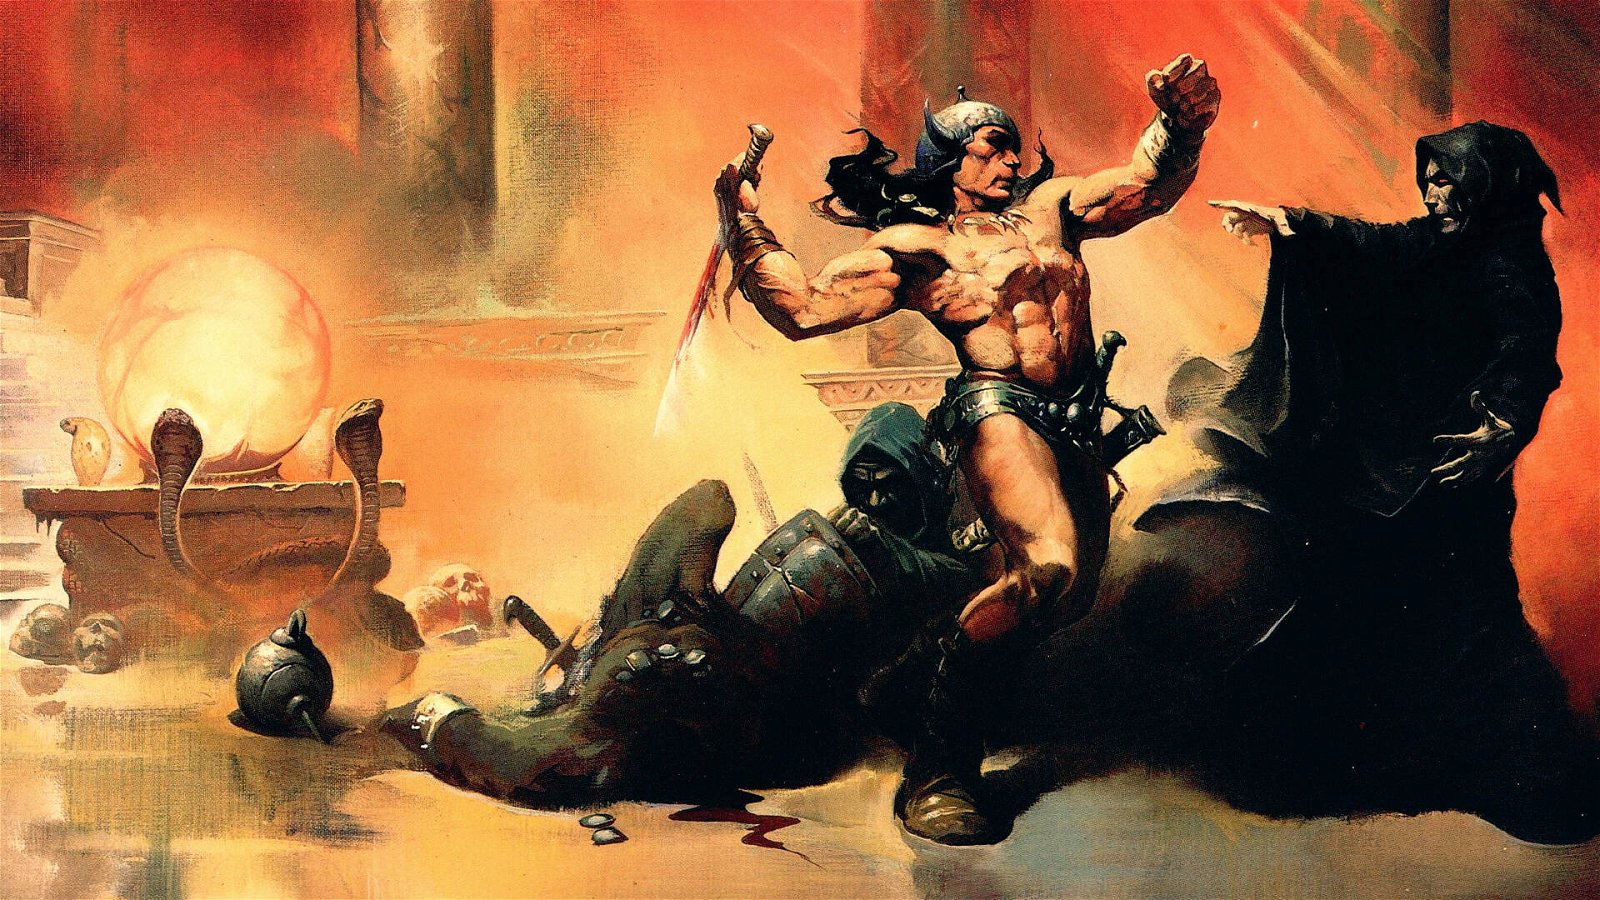 Immagine di Conan il Barbaro su Netflix: in sviluppo una serie TV